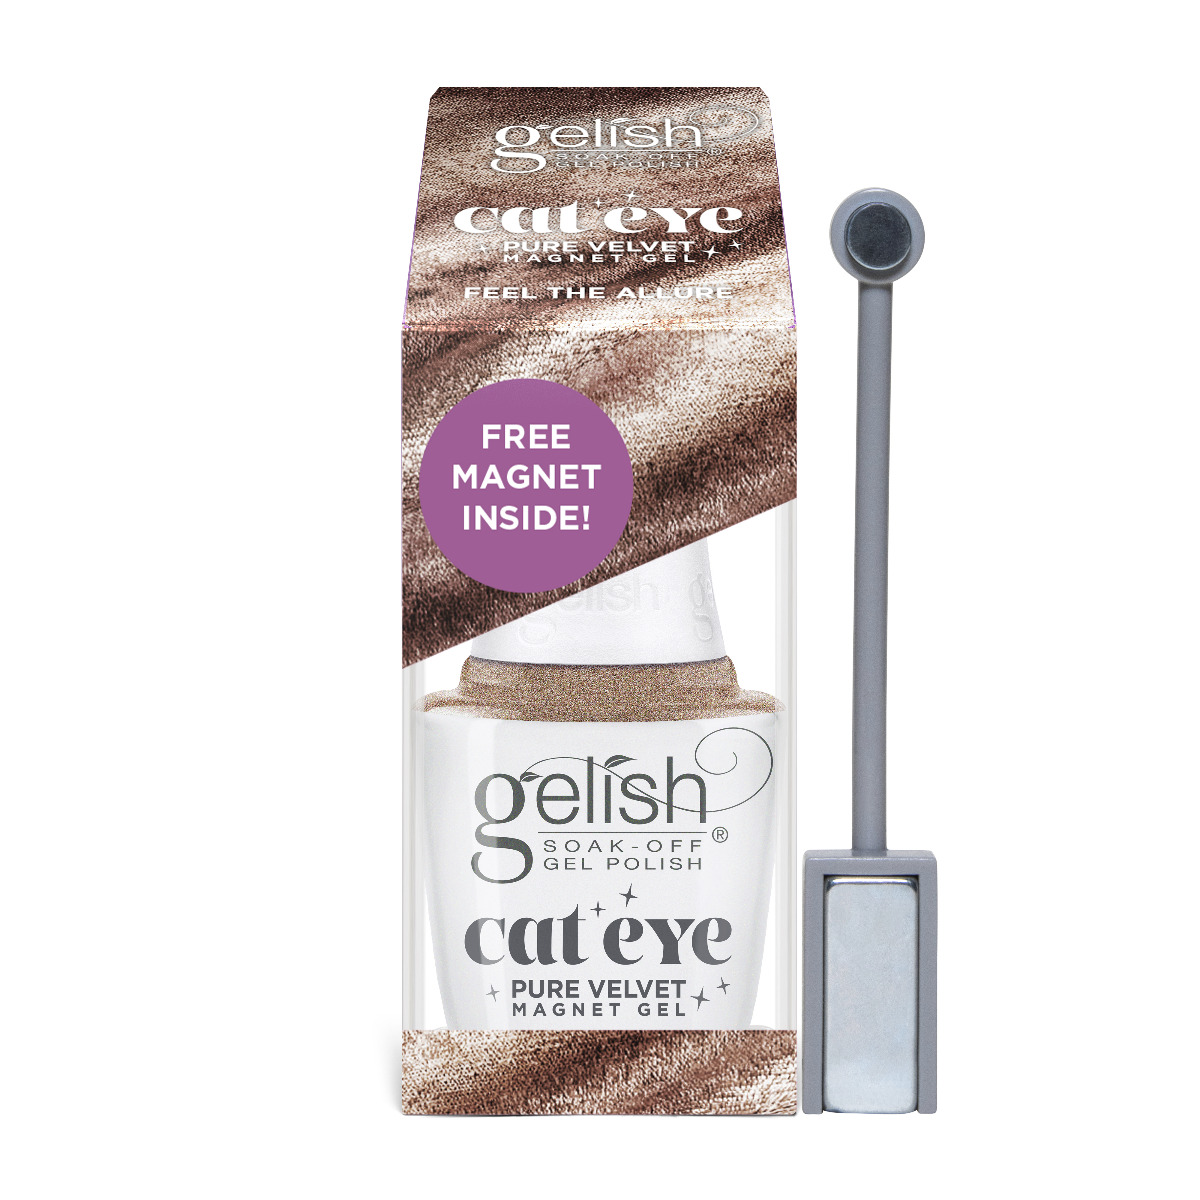 Gelish Cat Eye Pure Velvet Feel The Allure Magnet Gel Polish, 0.5 fl oz.